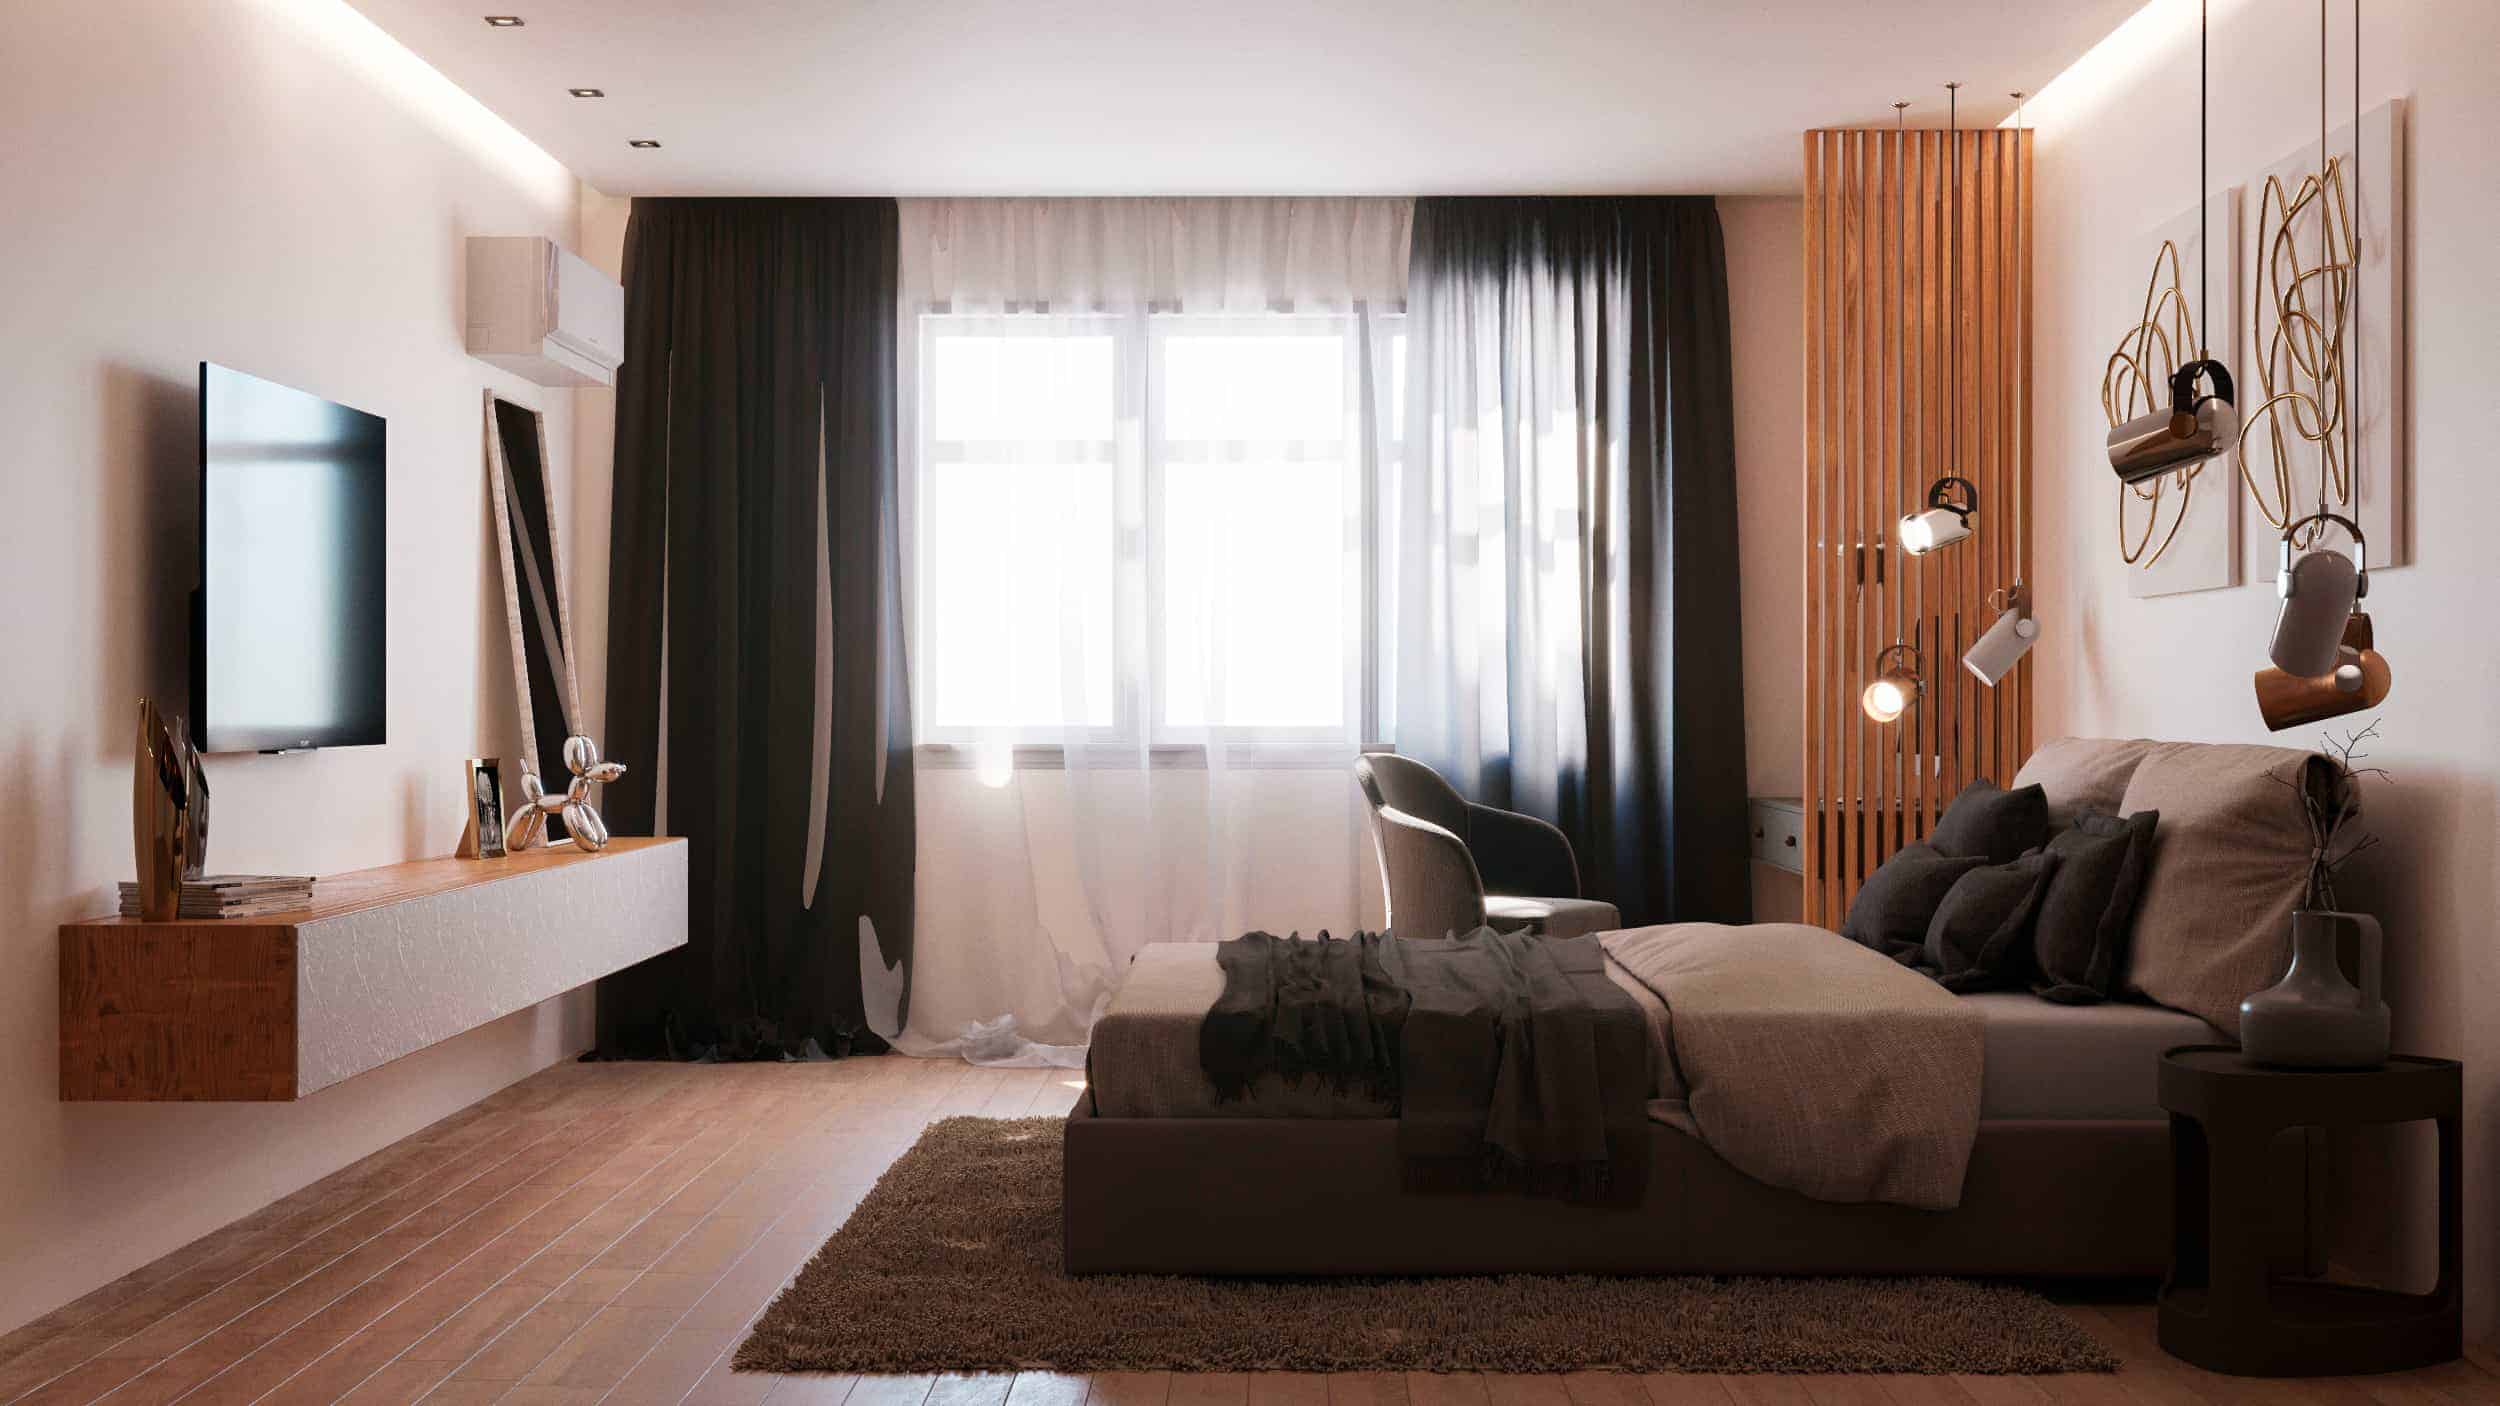 Bedroom Interior Design Design Ideas